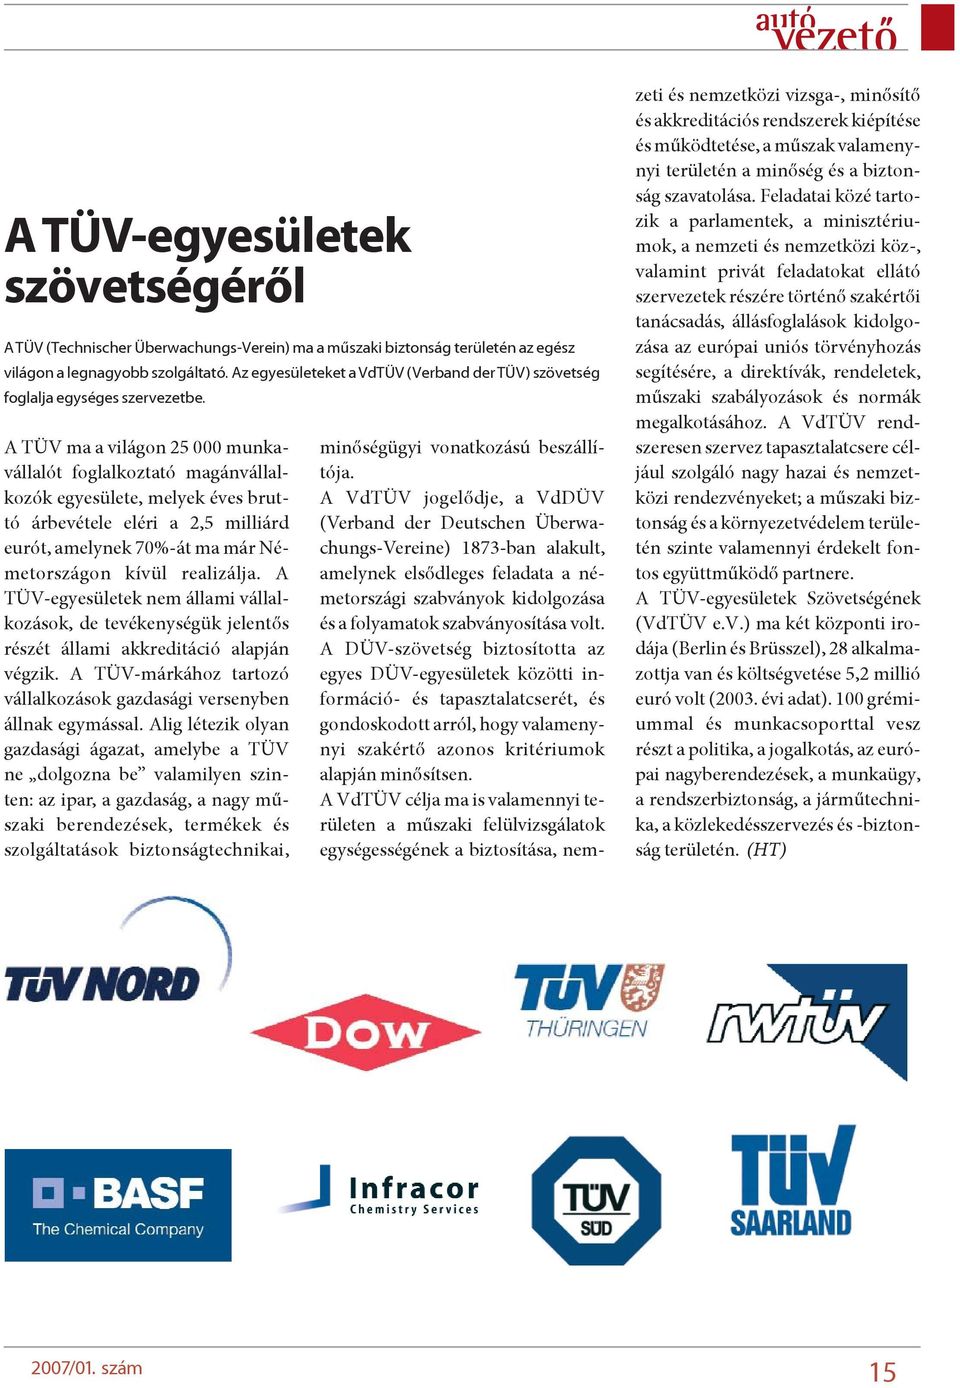 A TÜV ma a világon 25 000 munkavállalót foglalkoztató magánvállalkozók egyesülete, melyek éves bruttó árbevétele eléri a 2,5 milliárd eurót, amelynek 70%-át ma már Németországon kívül realizálja.